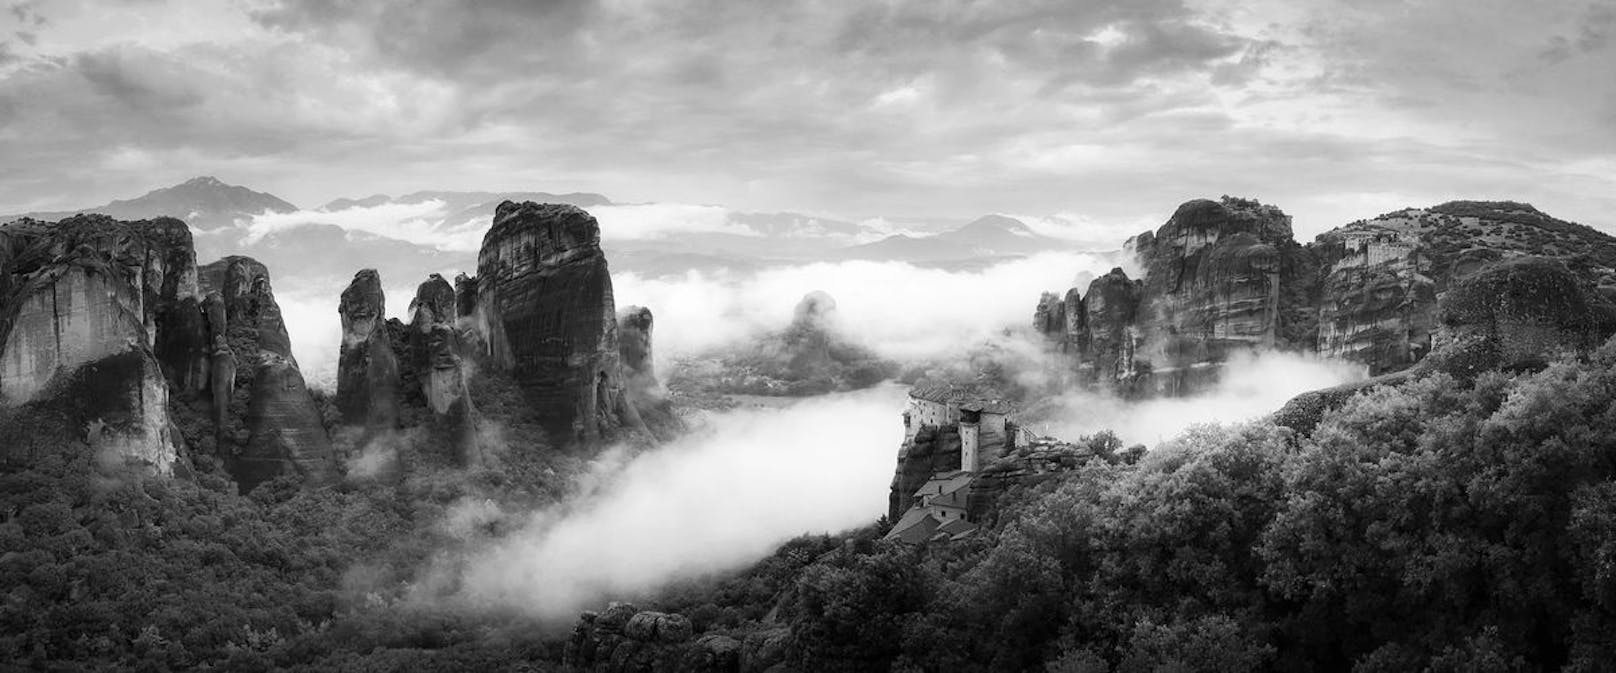 <strong>3. Preis "Panorama":</strong> Bild geschossen von Gerrine Tsang